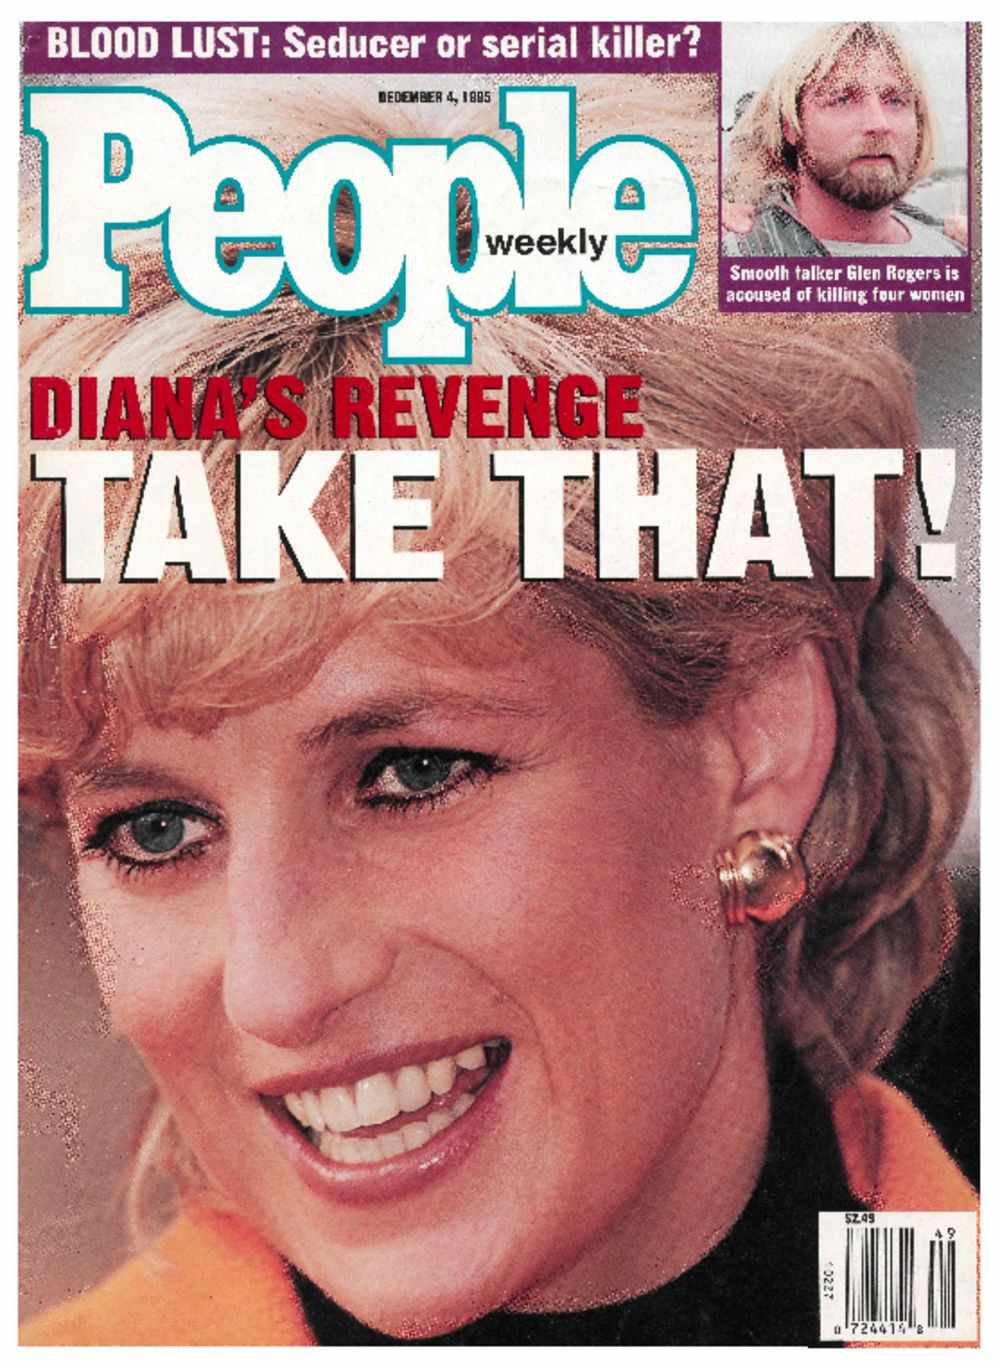 December 4, 1995: Diana's Revenge: Take That